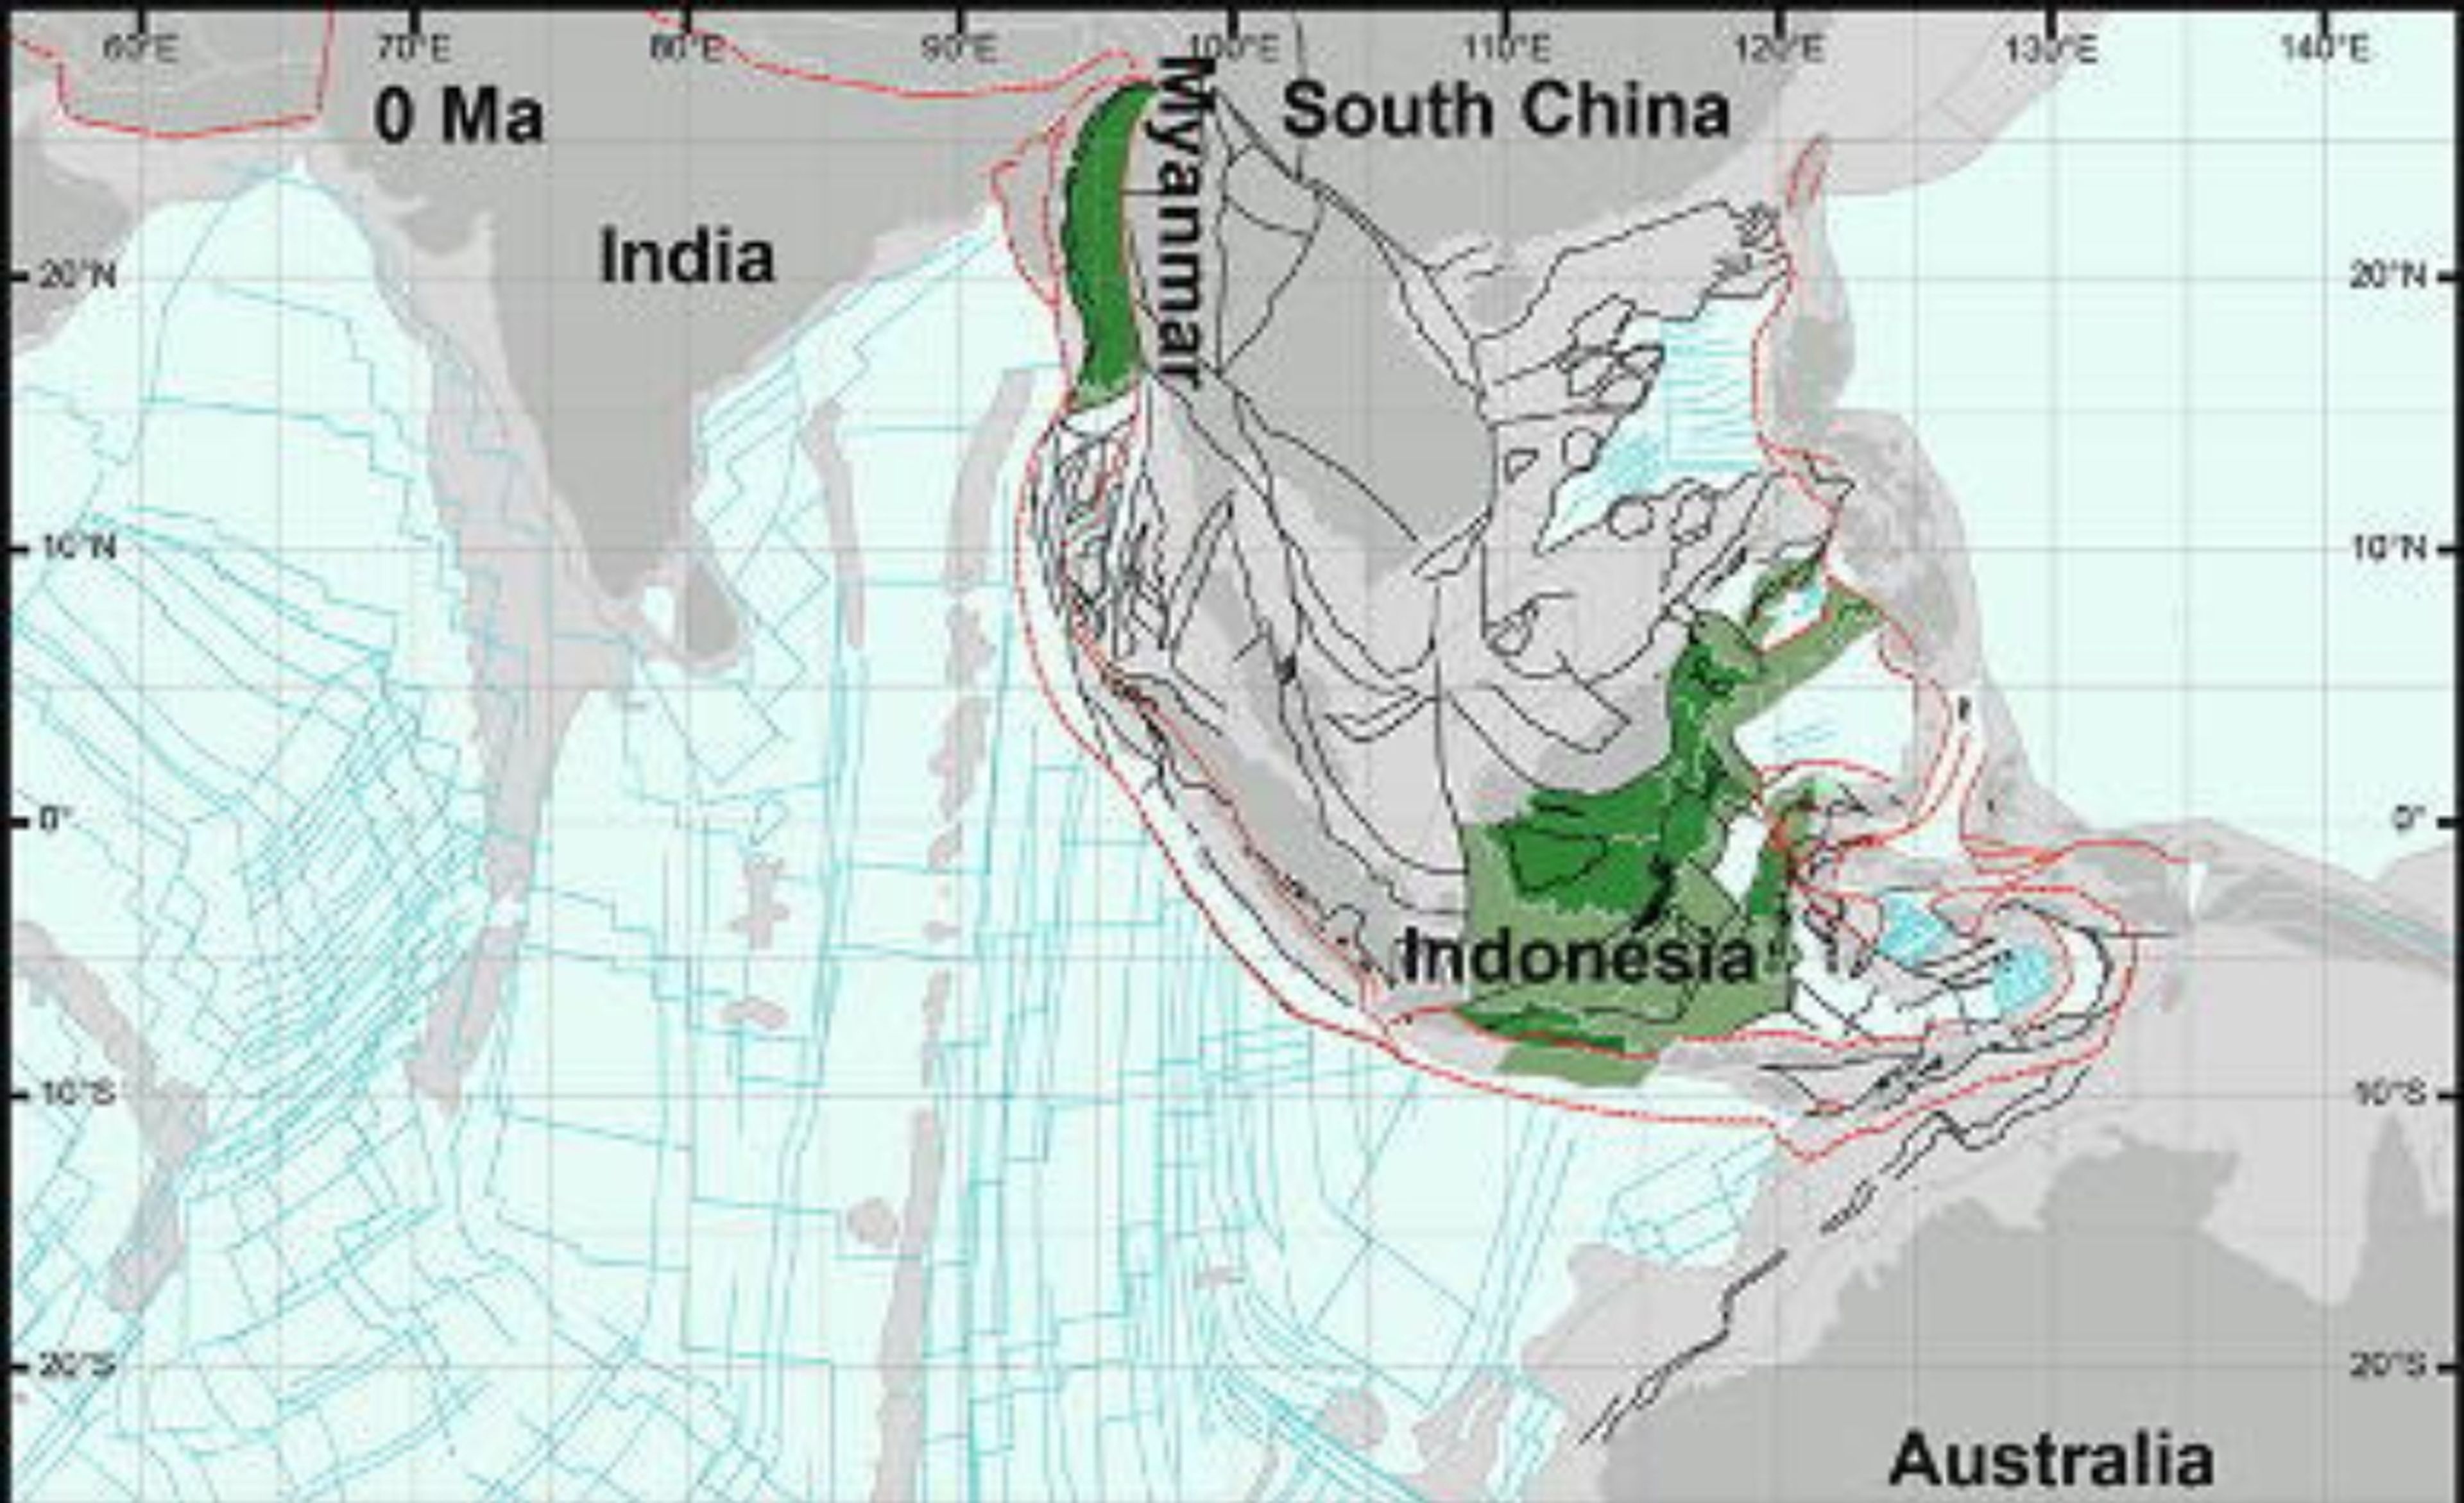 Los fragmentos de Argolandia, que se muestran en verde en este mapa actual, se han desplazado en su mayoría hacia el lado oriental de Indonesia, mientras que algunos han migrado hacia Myanmar. Fuente: Advokaat & Hinsbergen, 2023.